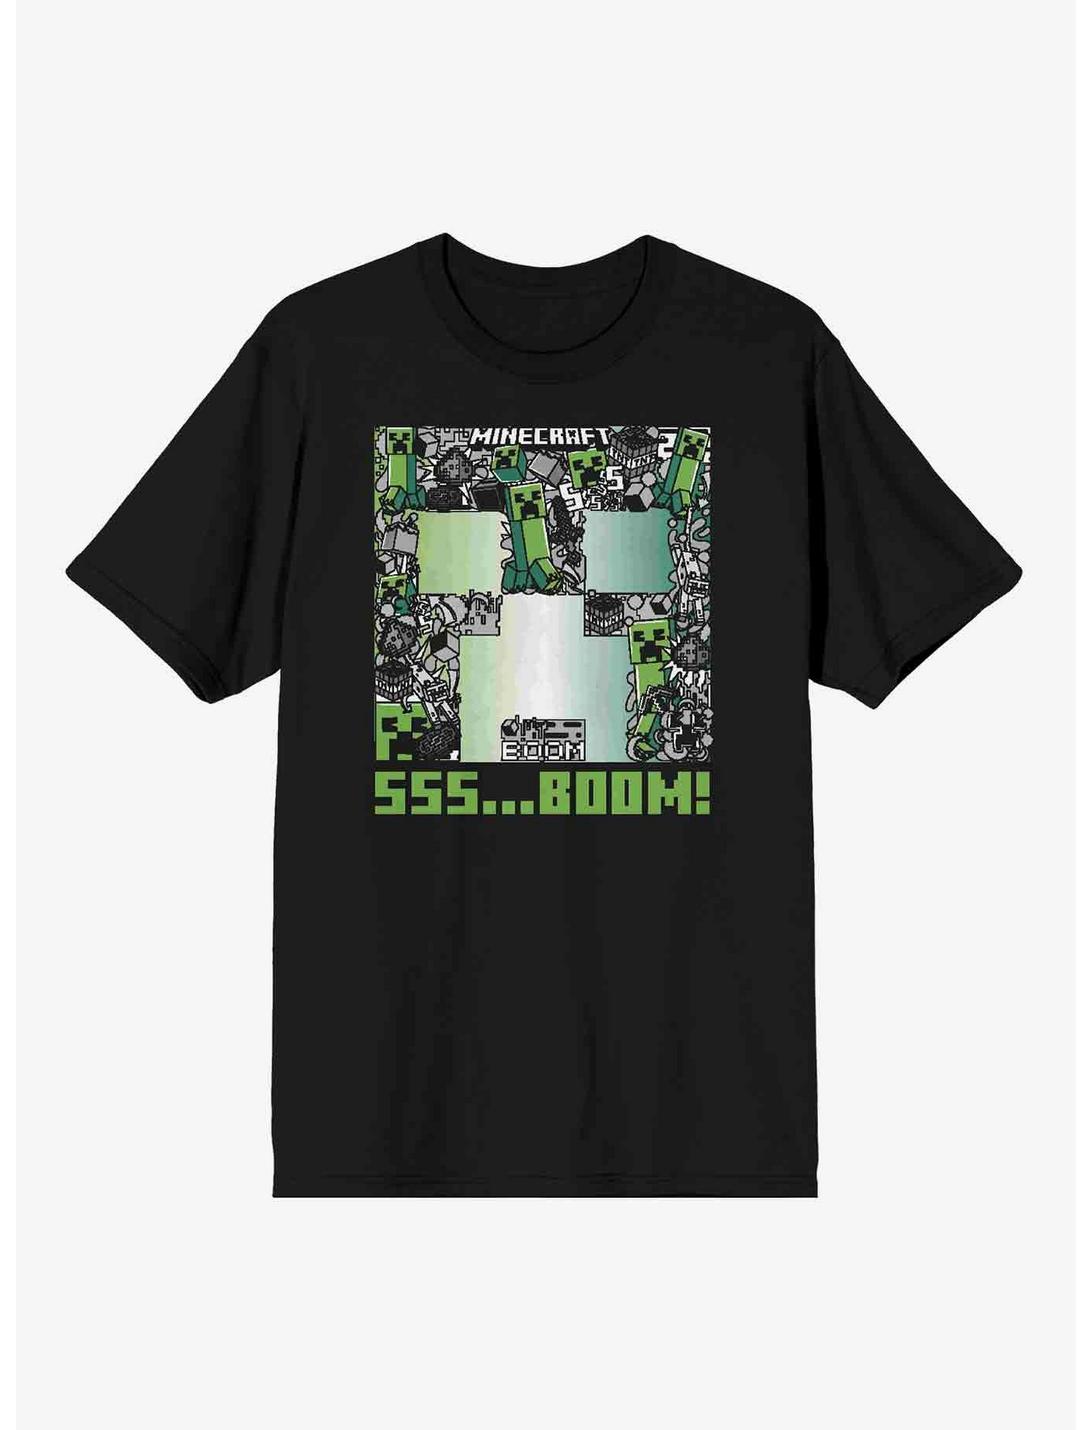 Minecraft Creeper SSS Boom T-Shirt, BLACK, hi-res